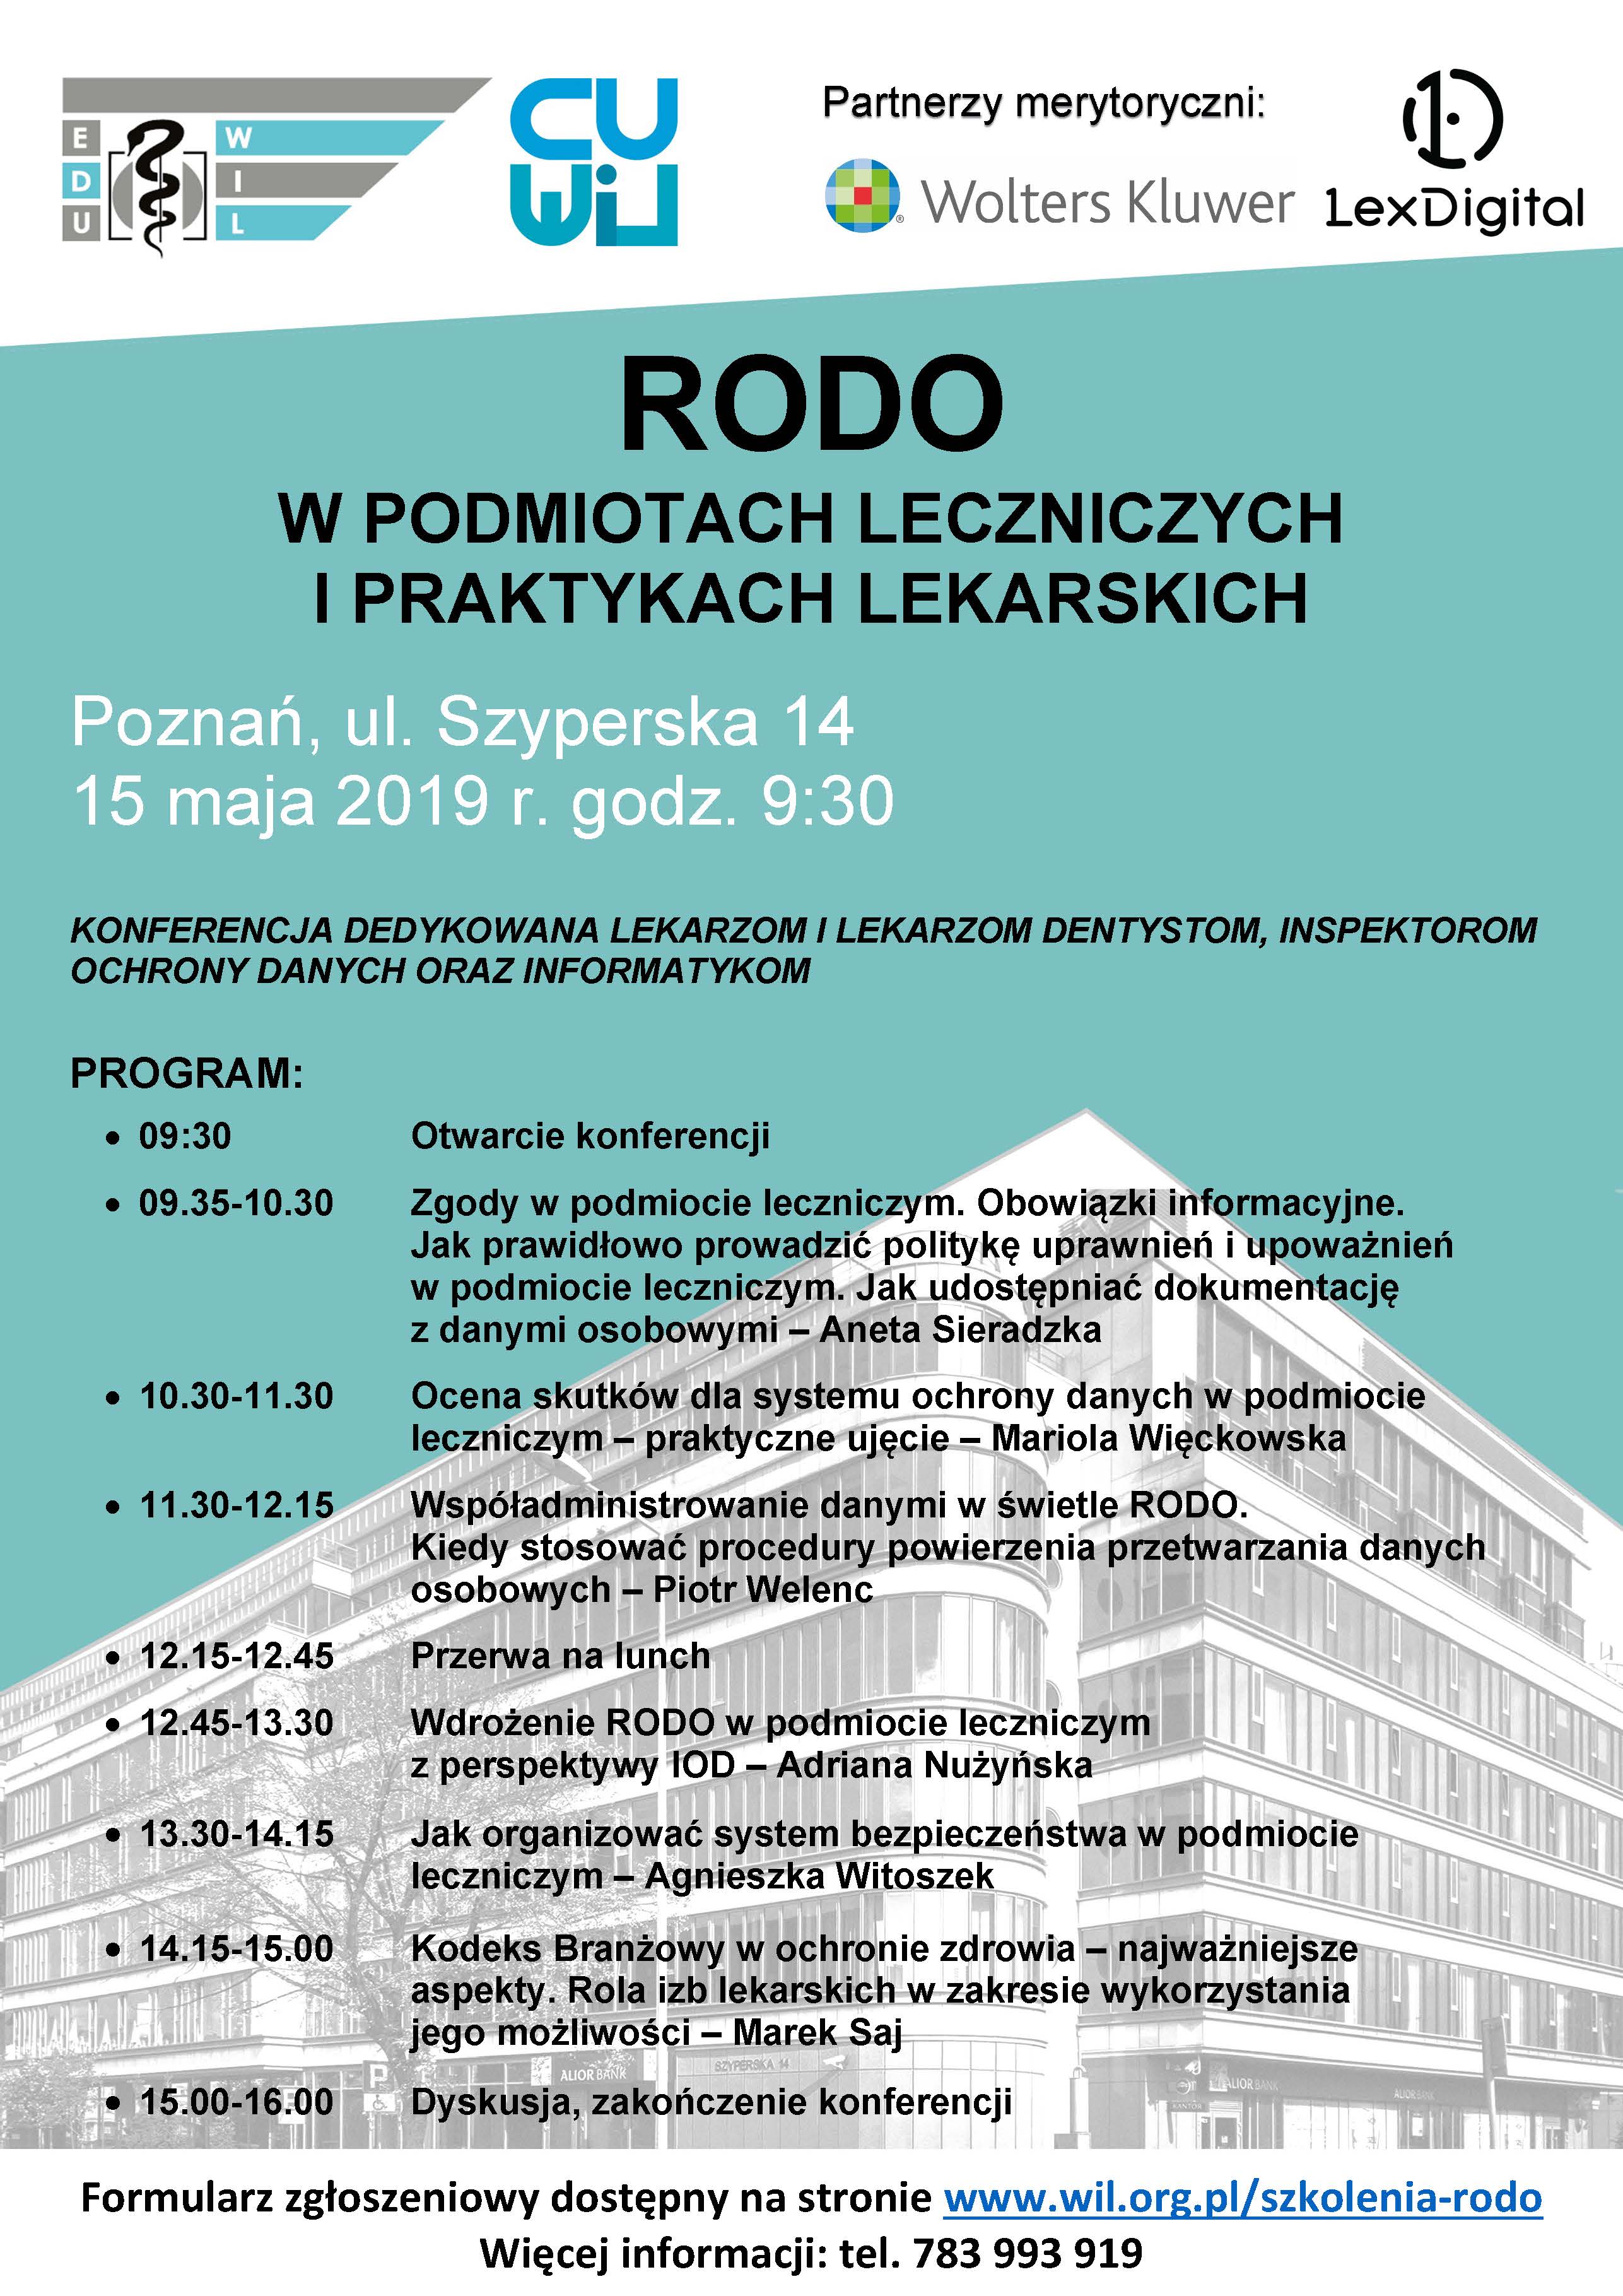 RODO program Poznań 15.5